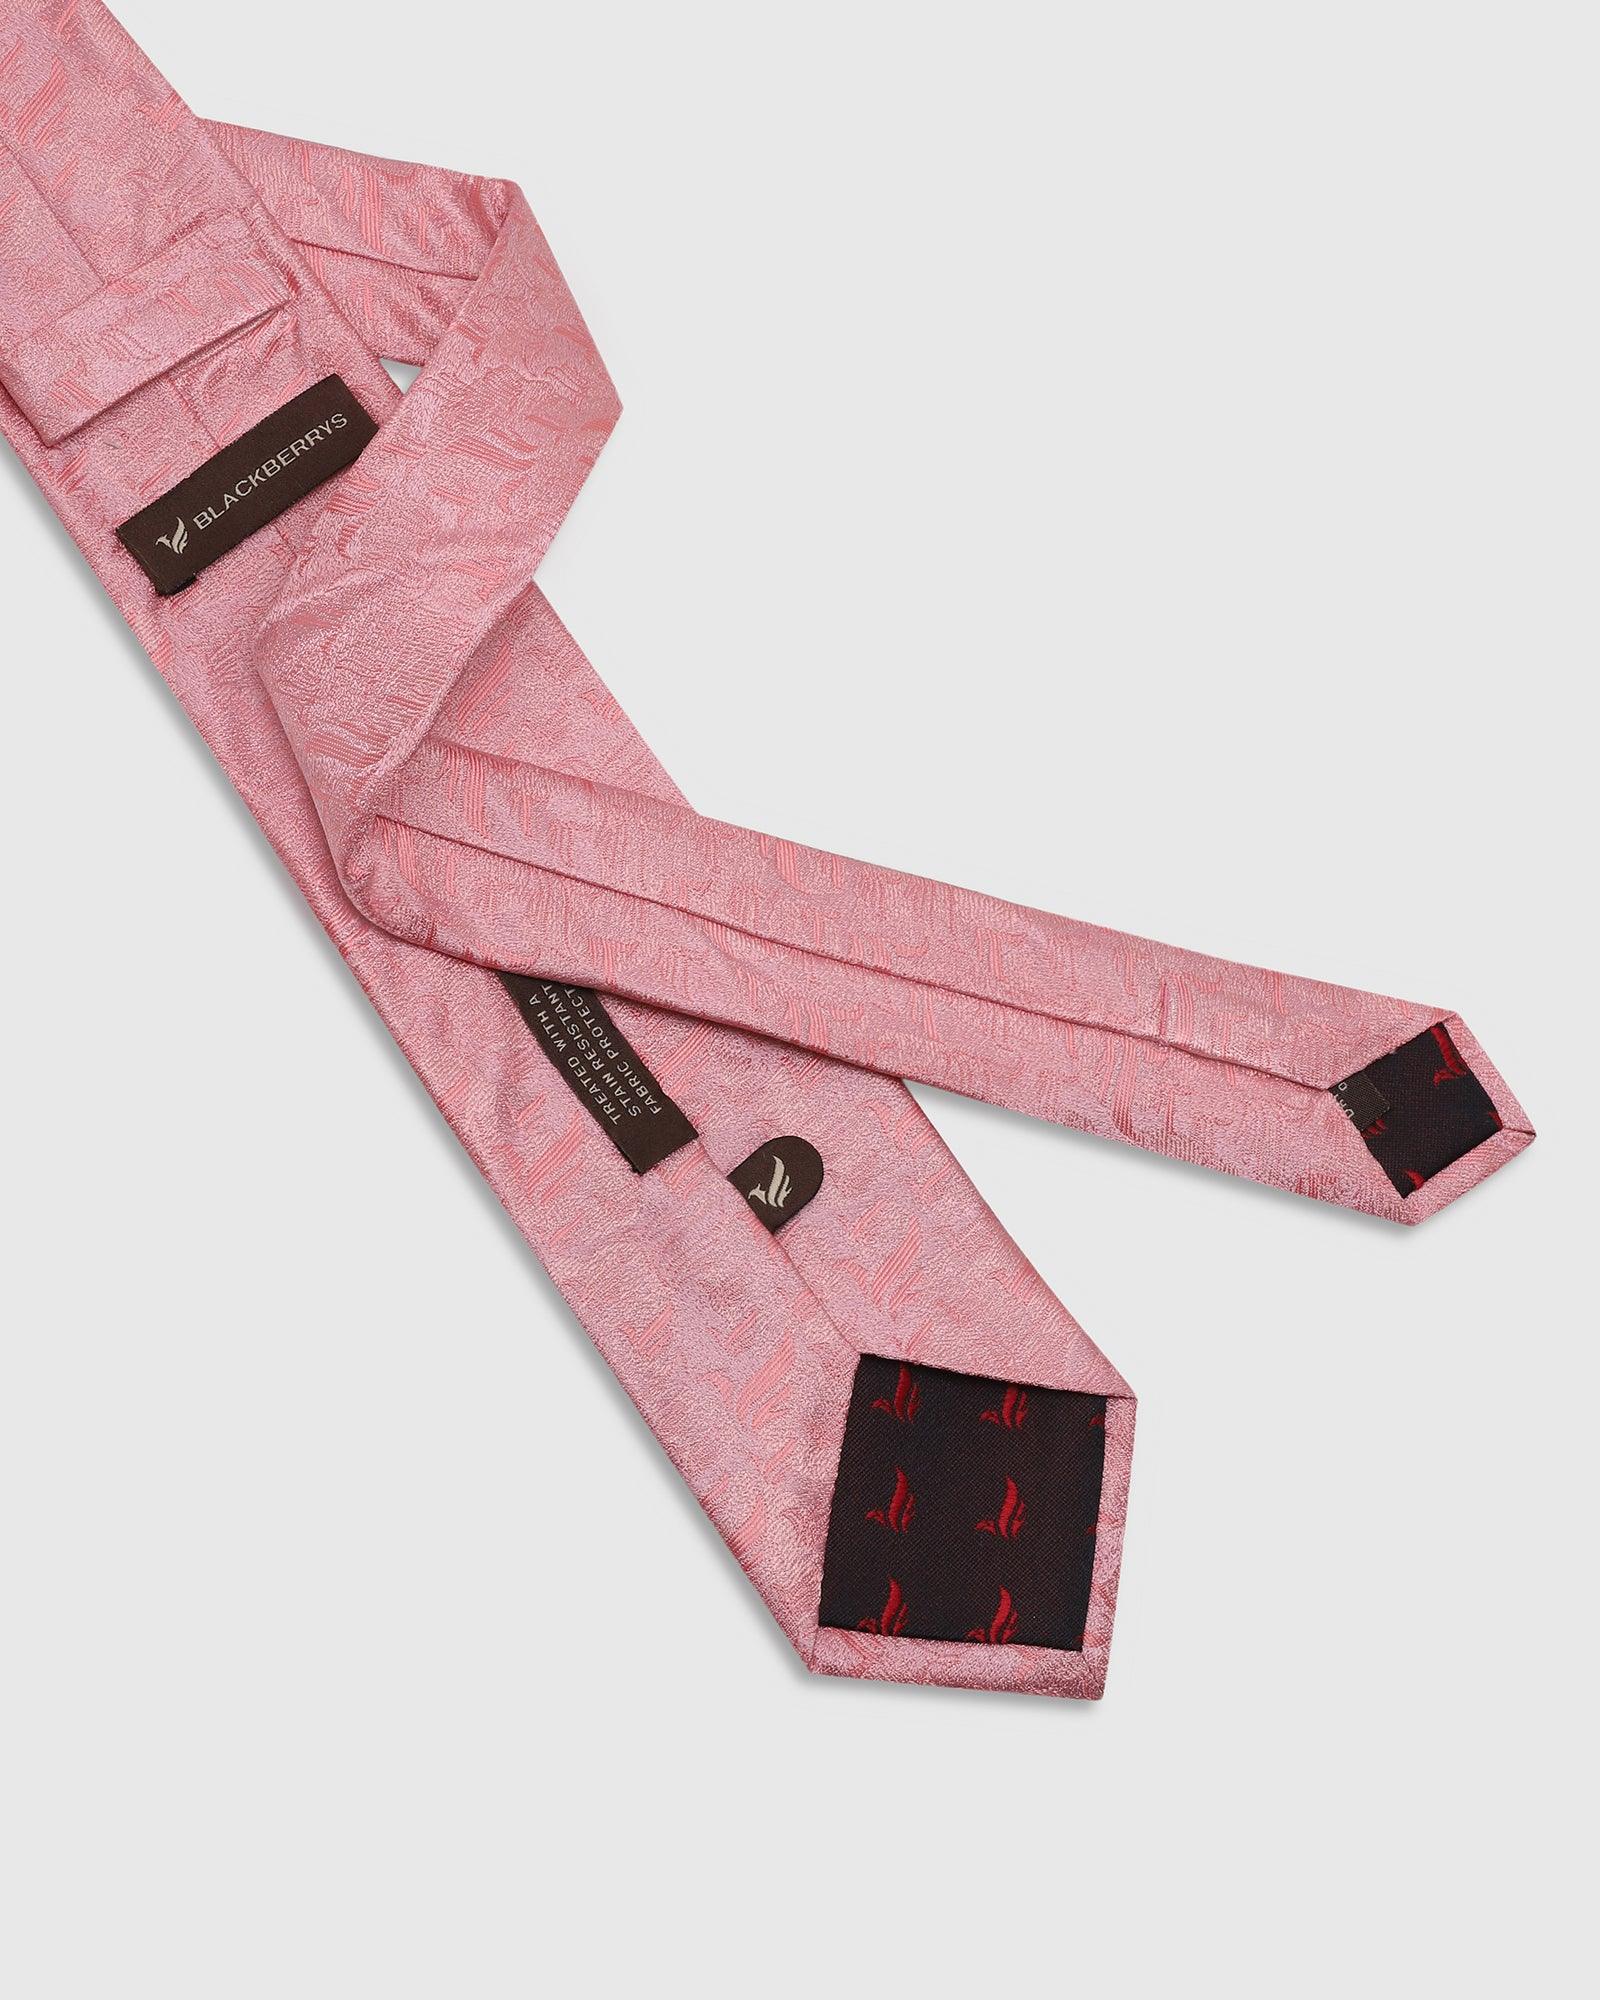 Printed Tie In Pink (Talisca) - Blackberrys